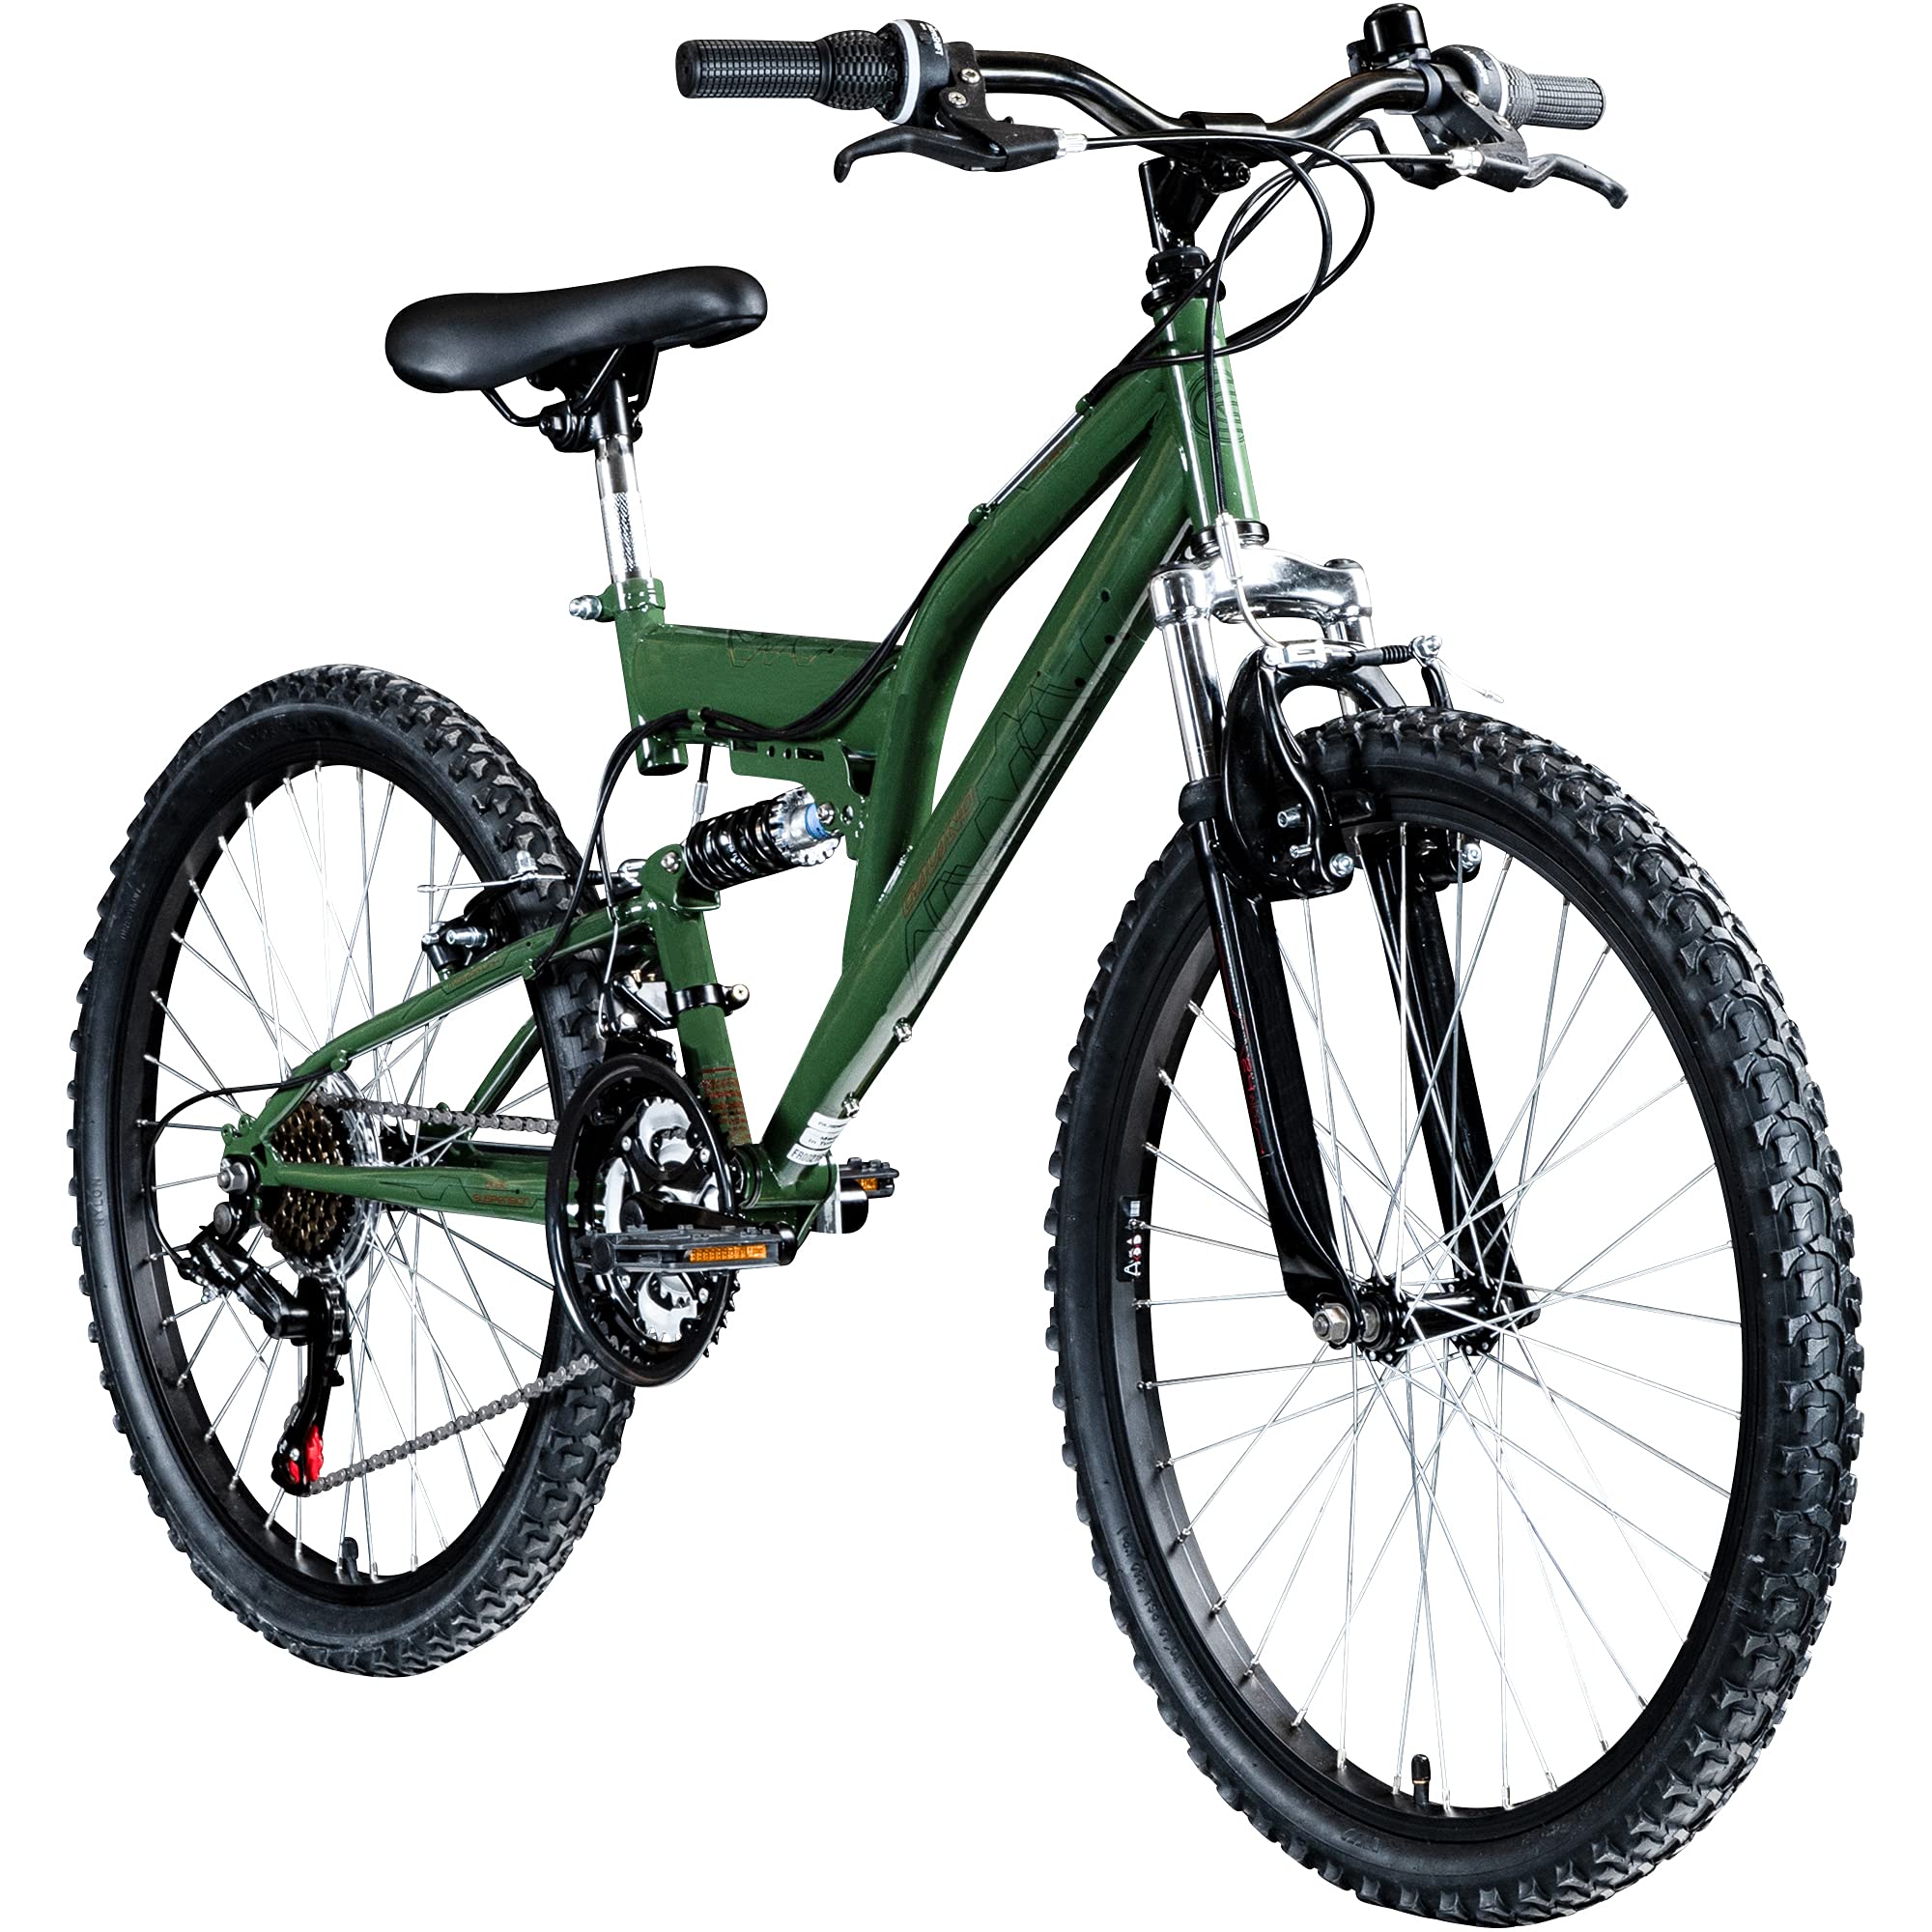 Galano Jugend Fahrrad 24 Zoll | 18 Gang Mountainbike für Mädchen und Jungen 130-145 cm ab 8 | Fully MTB Jugendfahrrad mit V-Brakes | Kinderfahrrad Jugendrad FS180